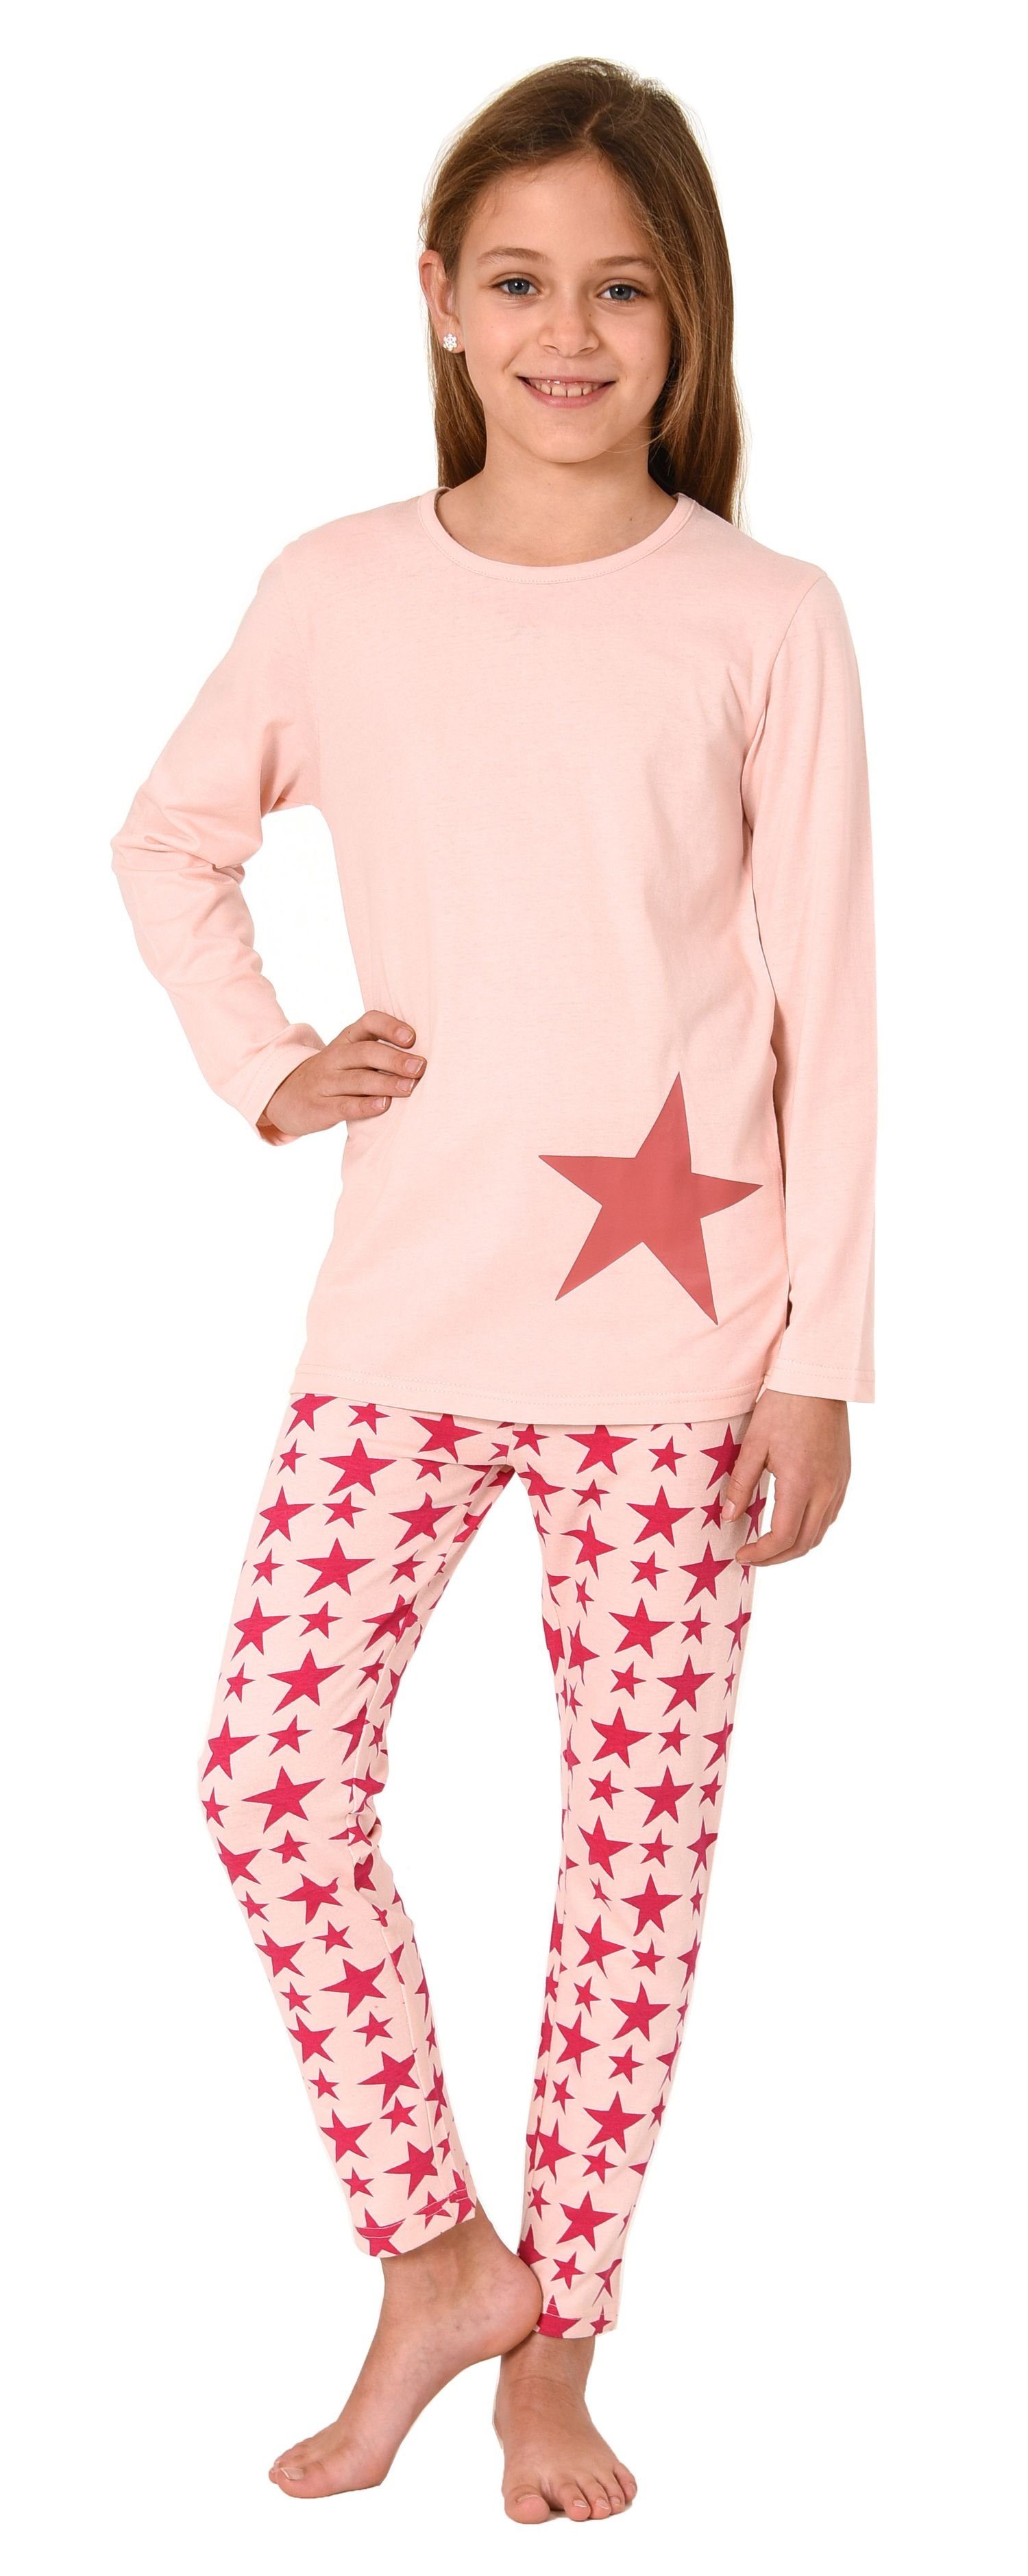 Schöner Normann Pyjama langarm rose Mädchen Sterne-Optik Schlafanzug Pyjama in